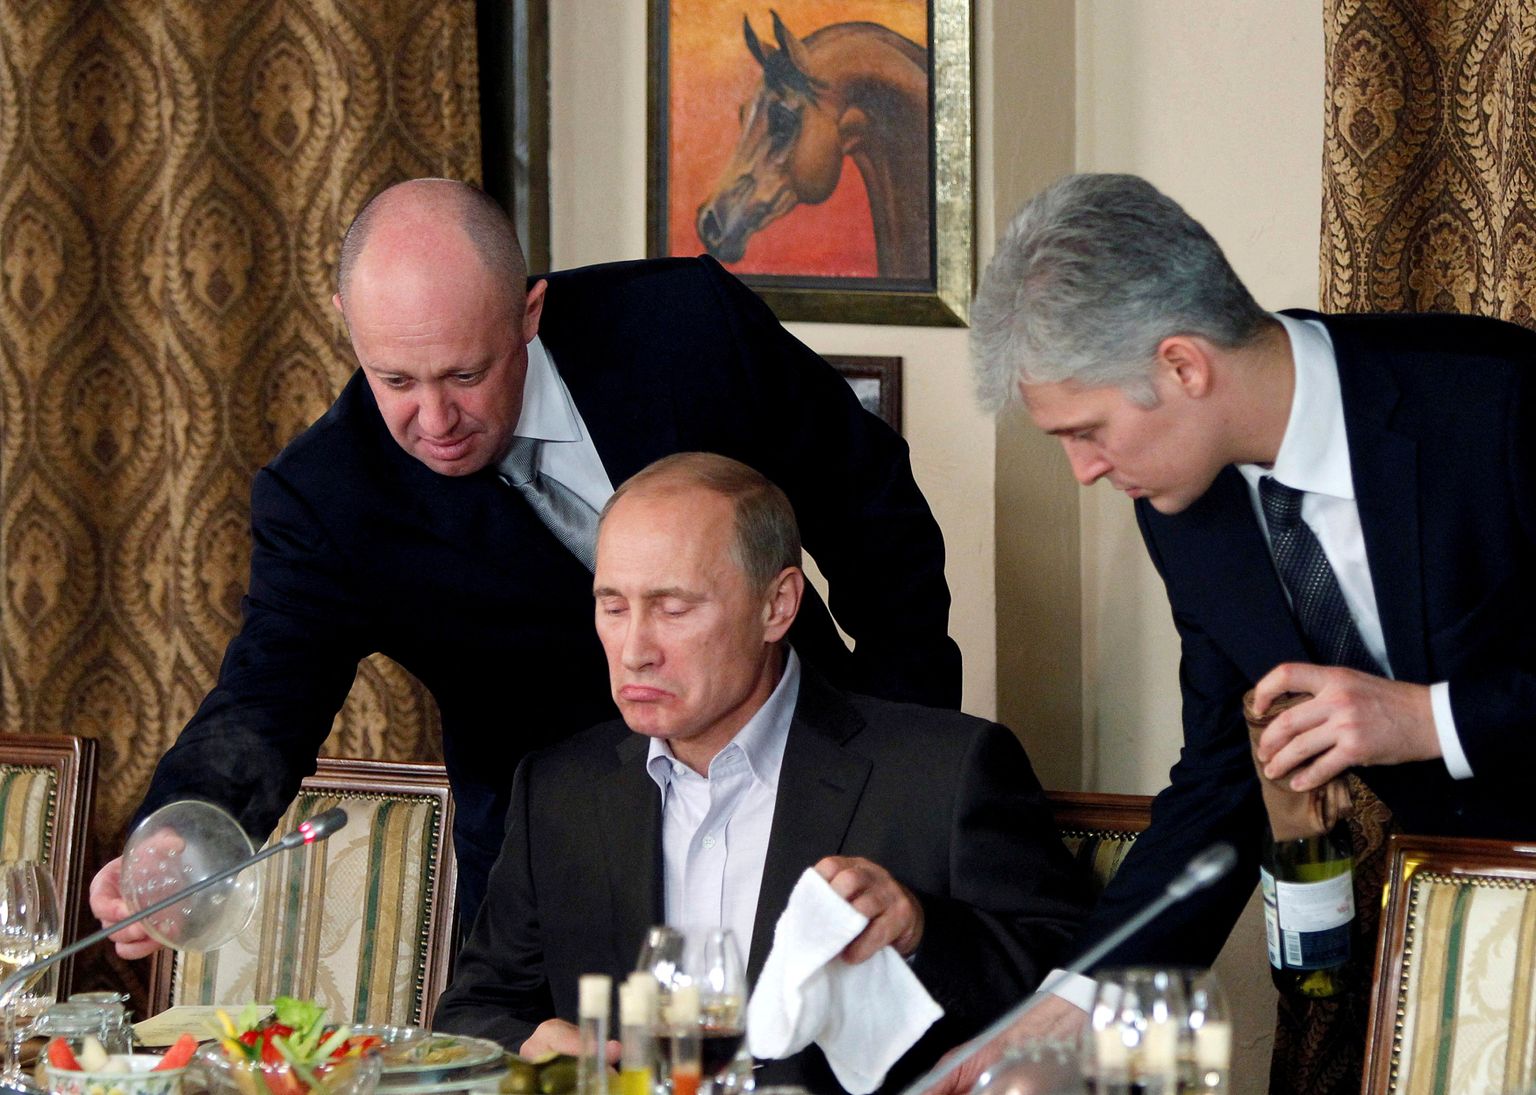 Restoraniärimees Jevgeni Prigožin (vasakul) serveerimas 11. novembril 2011 Moskva lähedase ratsabaasi restoranis süüa Venemaa peaministrile Vladimir Putinile